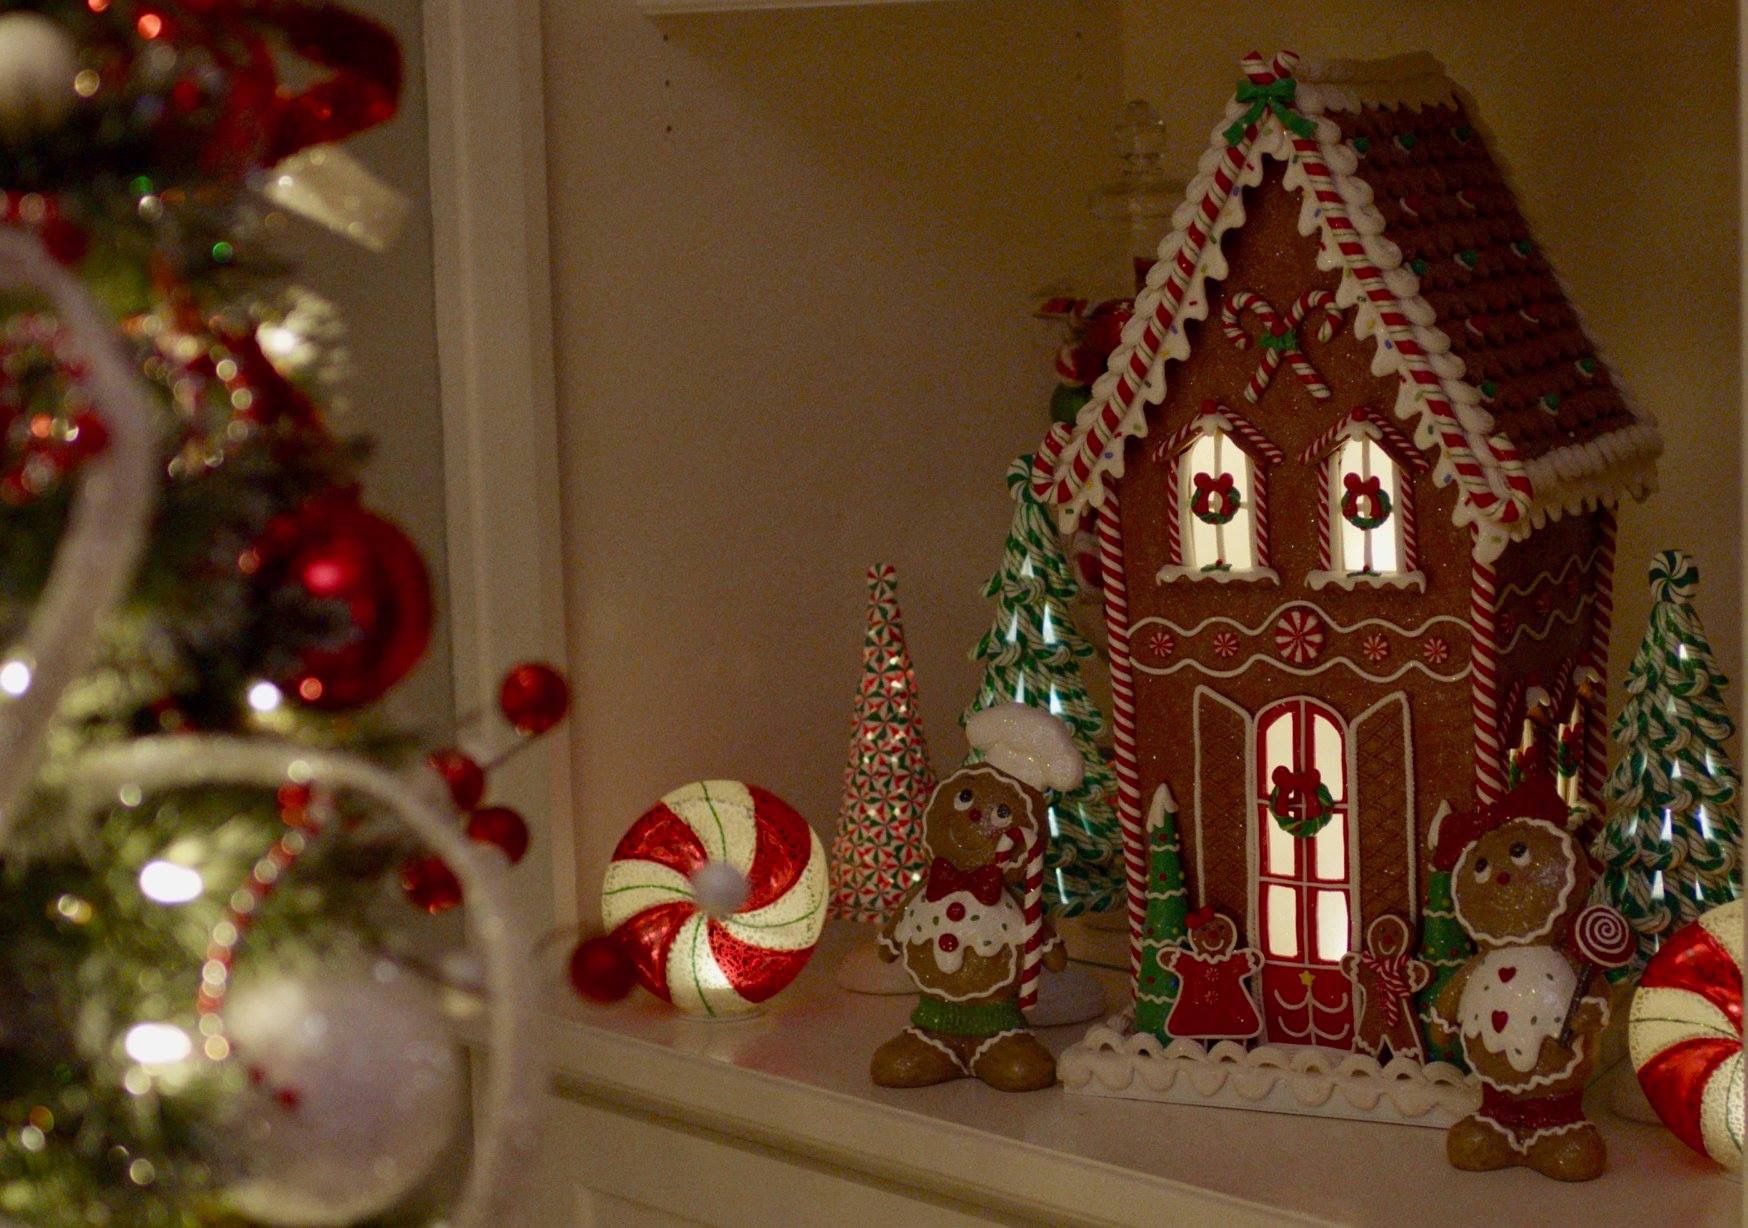 Christmas Decor Inspiration: Deck The Halls With Joyful Holiday Cheer